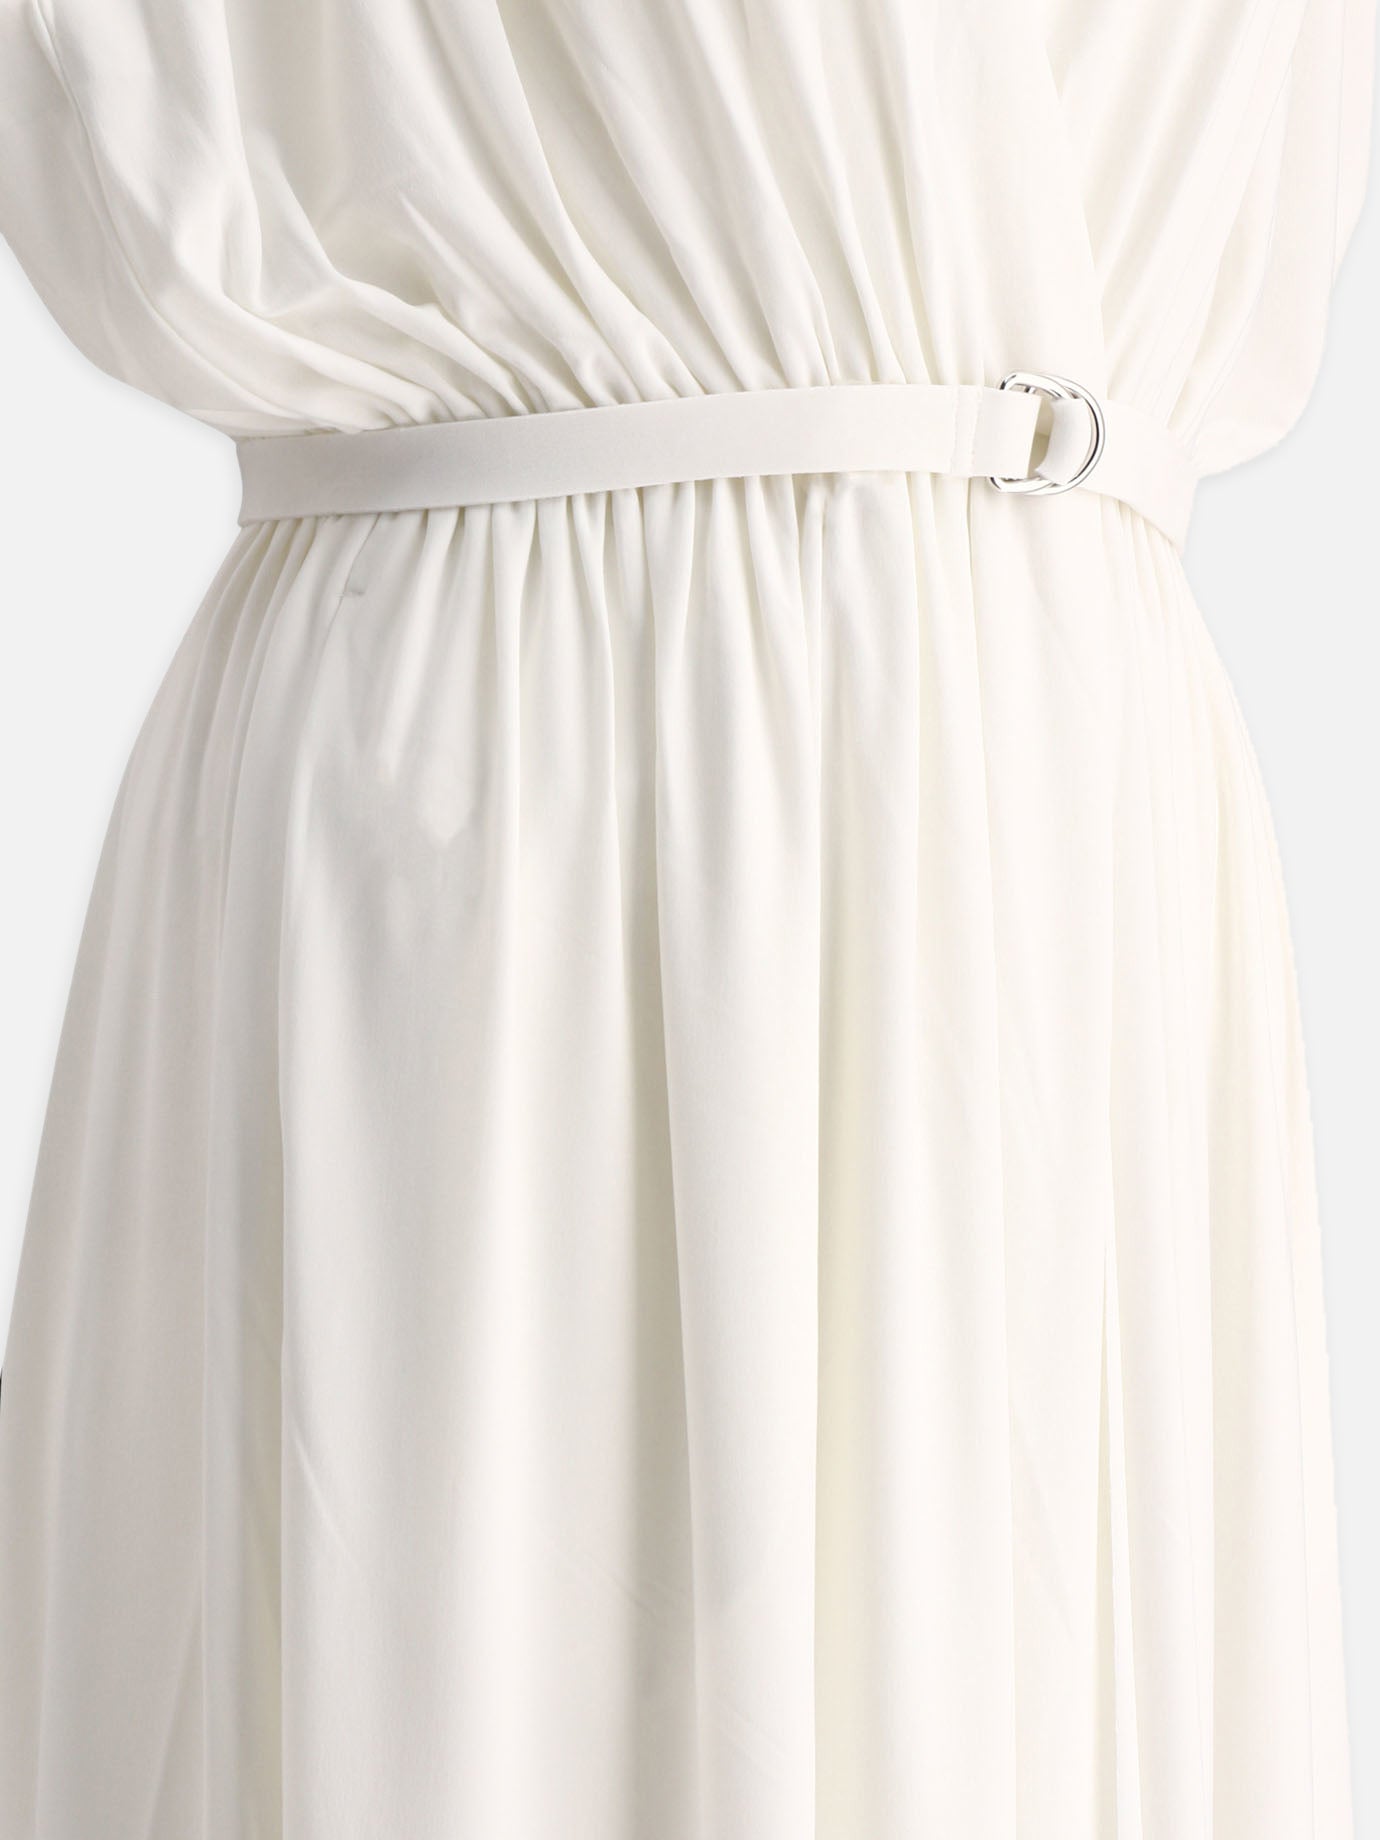 "Athena" gown